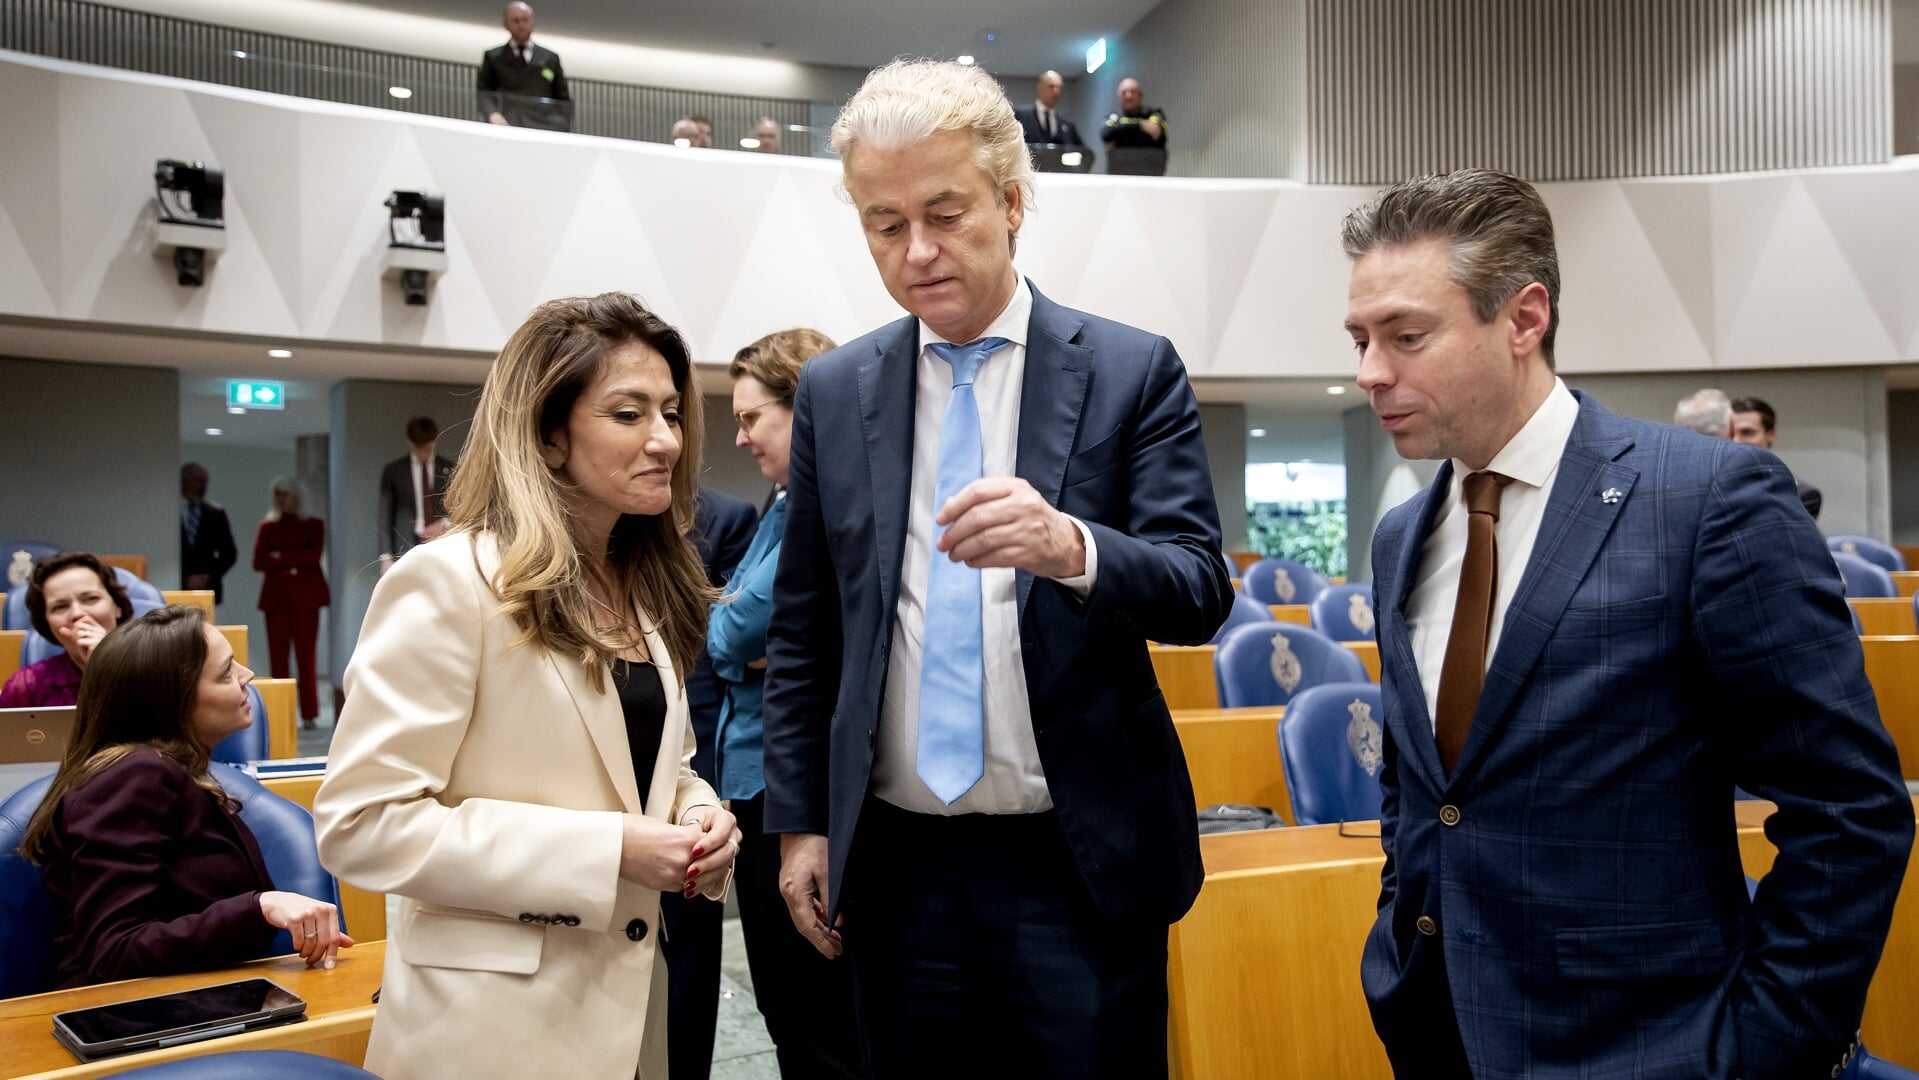 SGP'er Chris Stoffer bij een formatiedebat in maart, met Dilan Yesilgöz (VVD) en Geert Wilders (PVV).